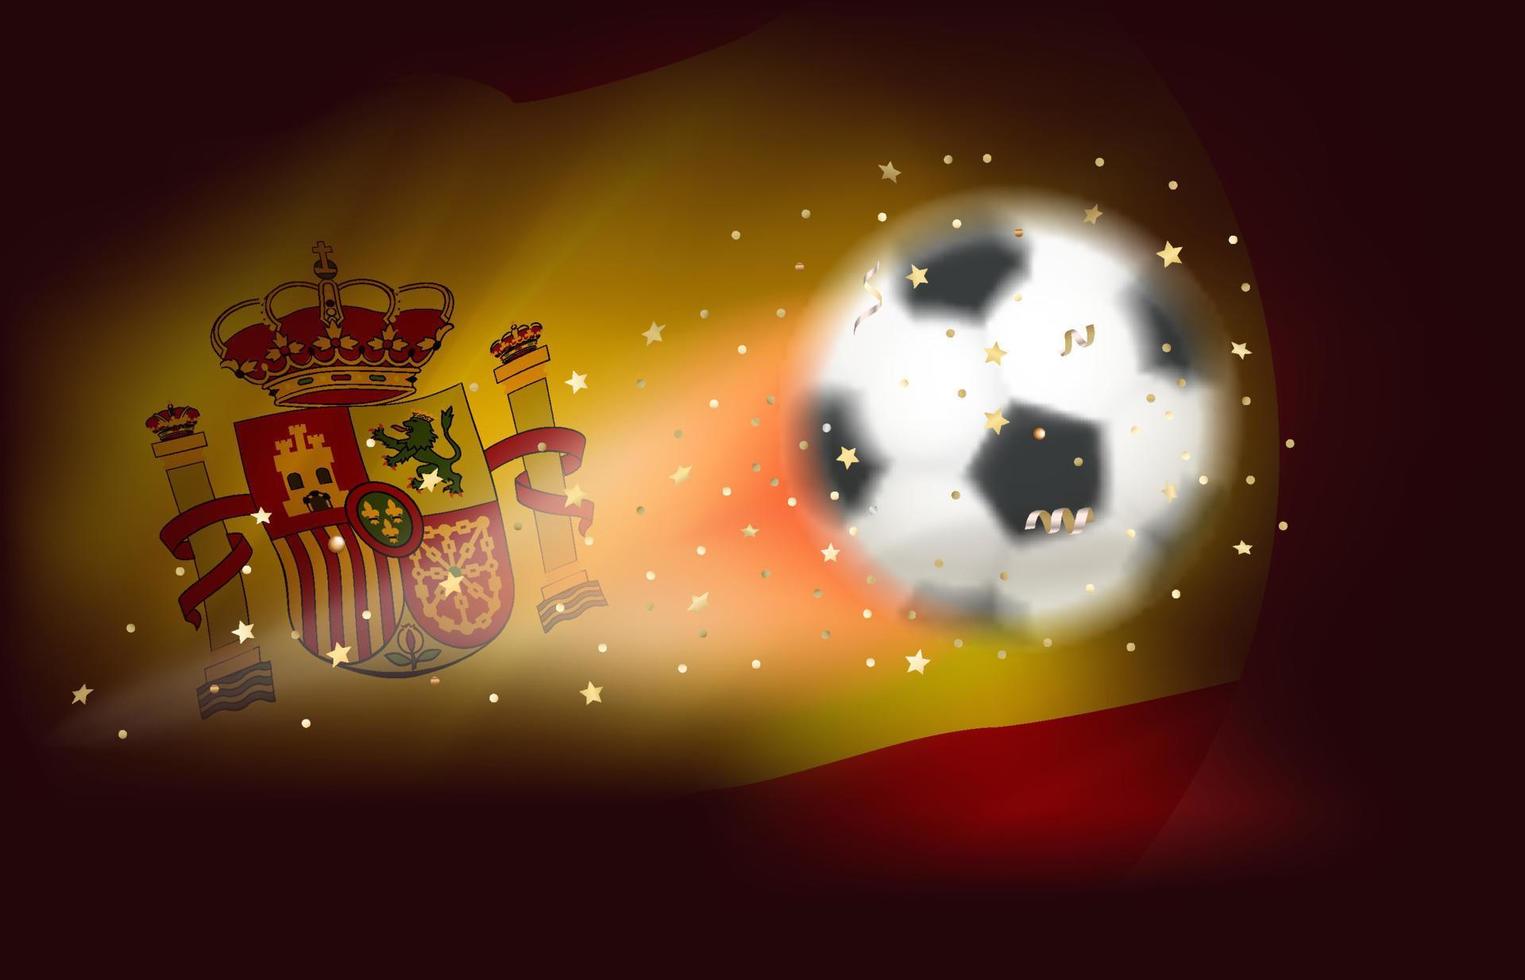 bola de futebol voadora com bandeira da espanha. ilustração em vetor 3D